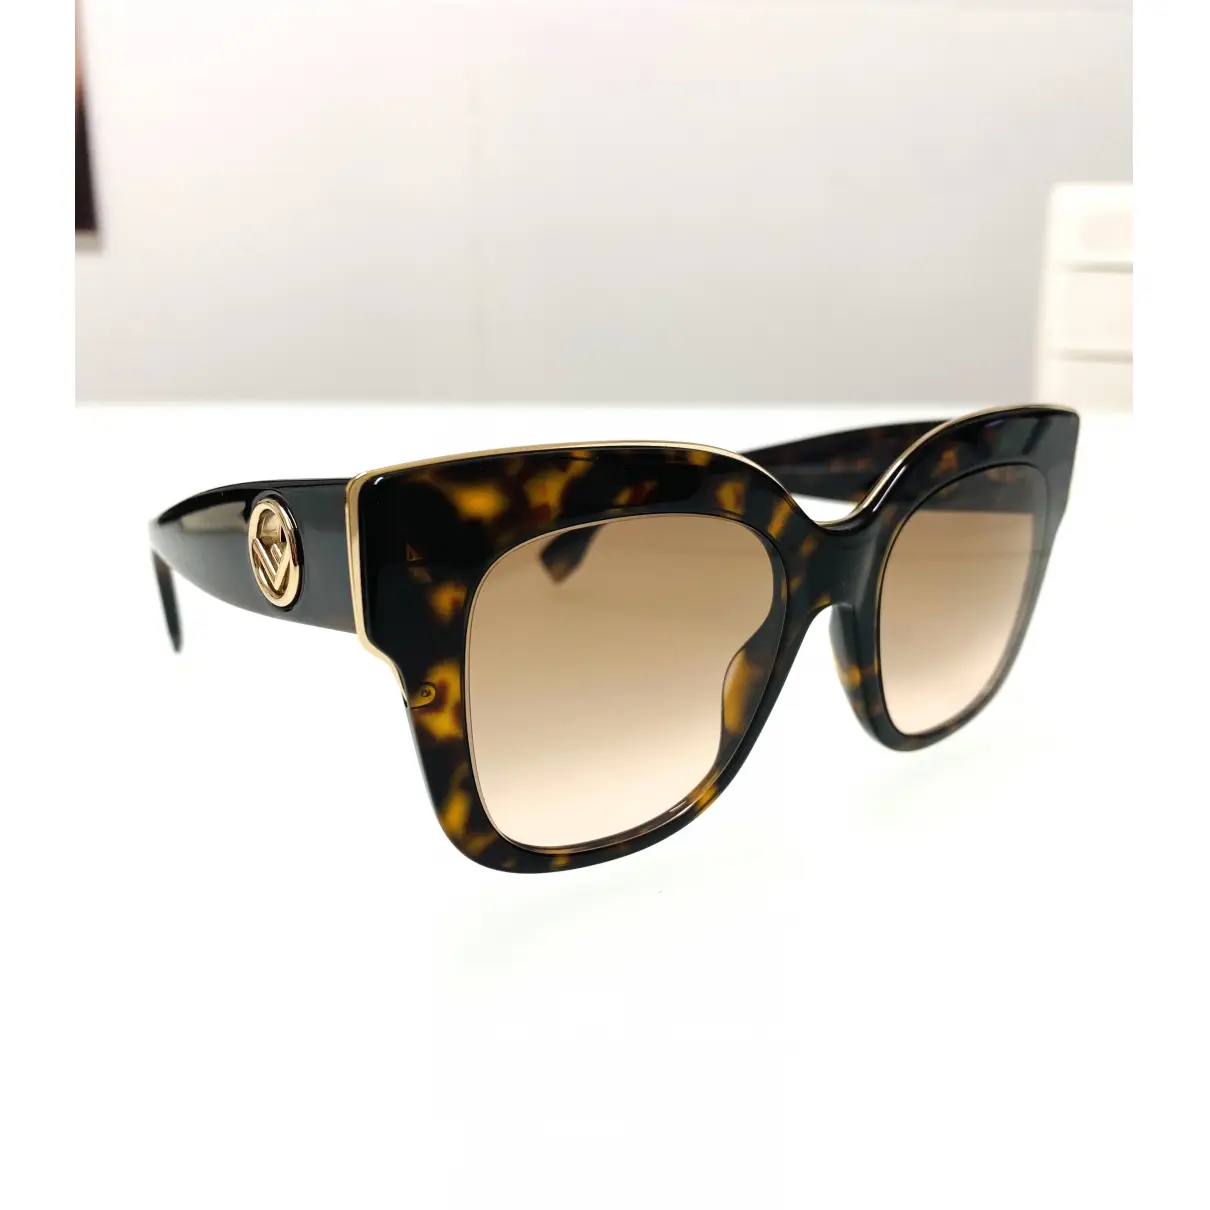 Buy Fendi Oversized sunglasses online